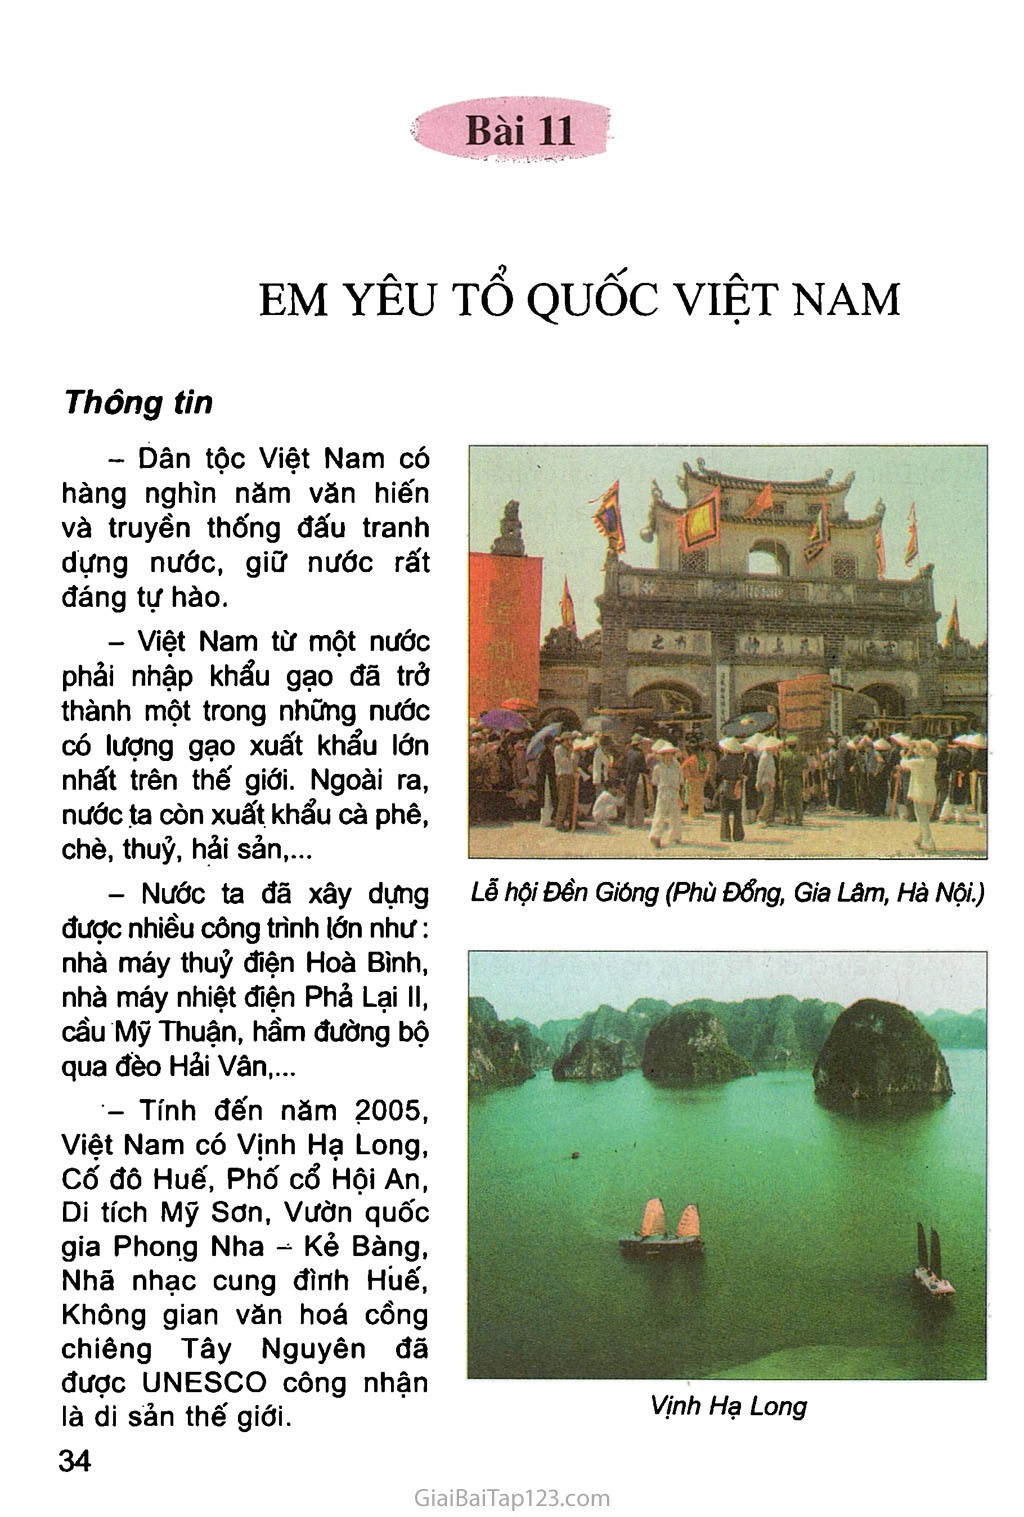 Tổ chức thi vẽ tranh Em yêu biển đảo Việt Nam Trường Tiểu học Thị trấn 1 An Minh Kiên Giang